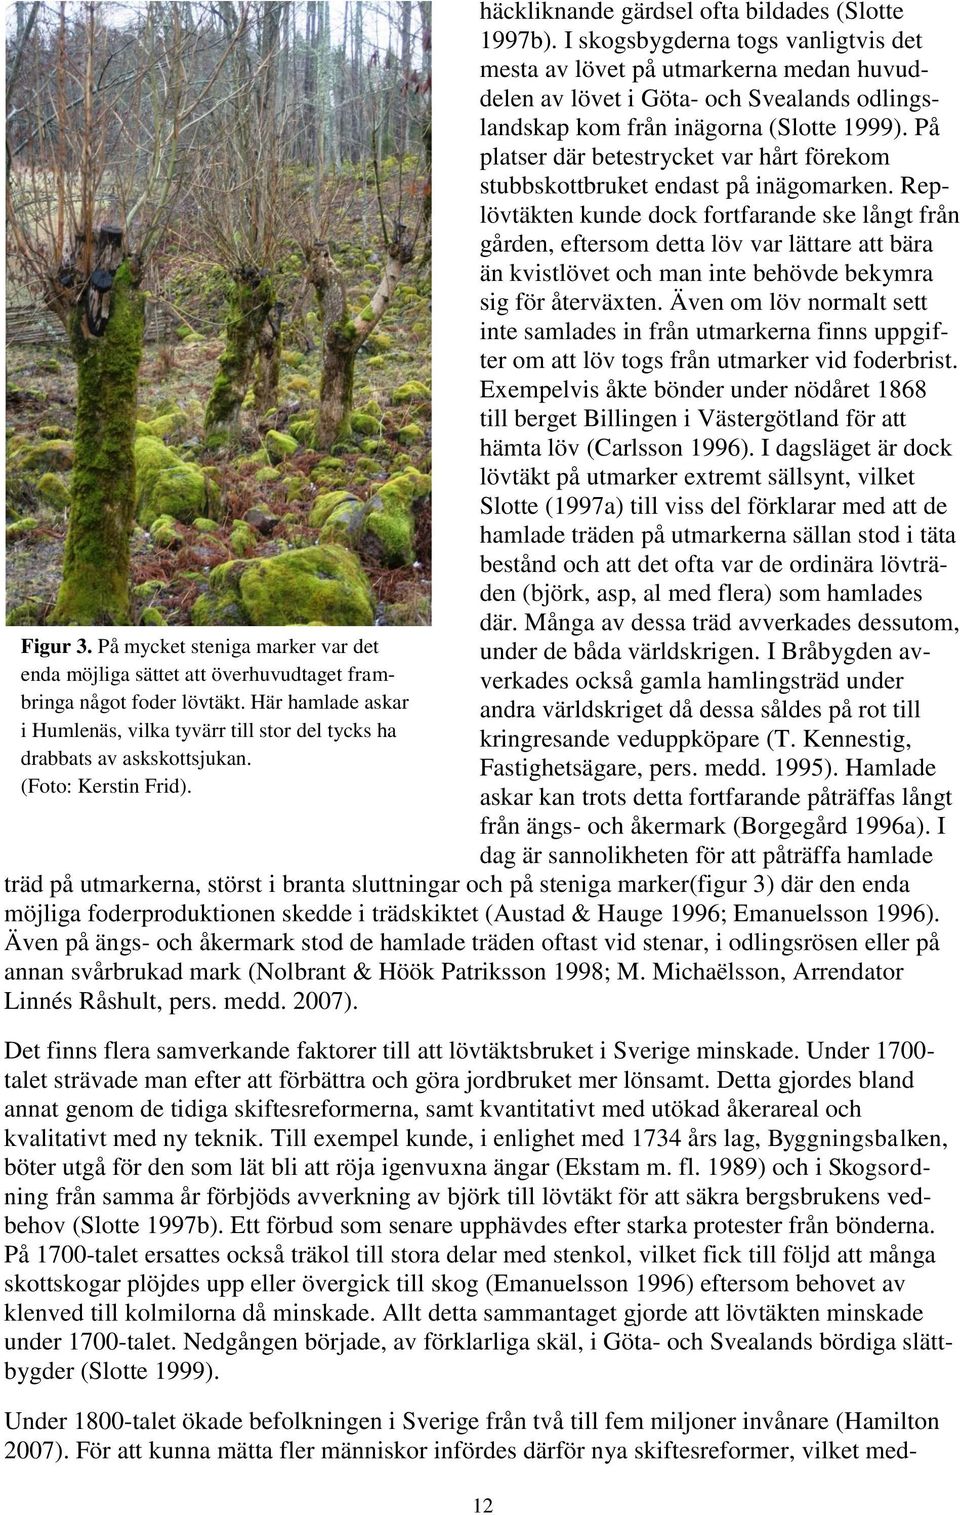 I skogsbygderna togs vanligtvis det mesta av lövet på utmarkerna medan huvuddelen av lövet i Göta- och Svealands odlingslandskap kom från inägorna (Slotte 1999).